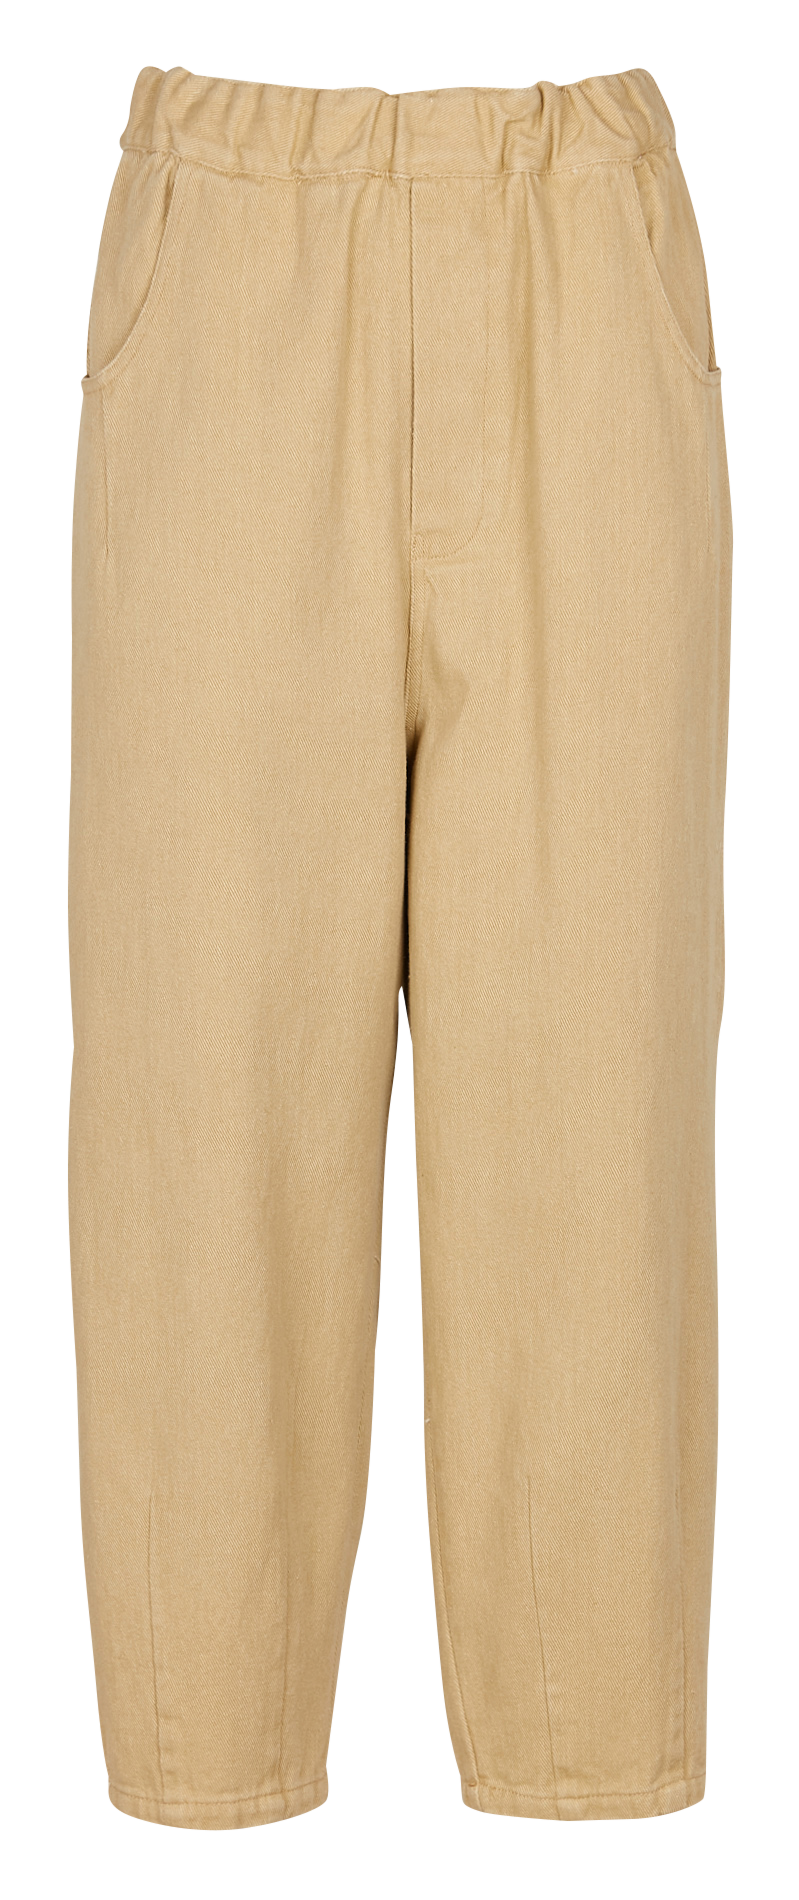 the-korner-pantalon-ancho-de-talle-alto-de-algodon-elastico-en-beige